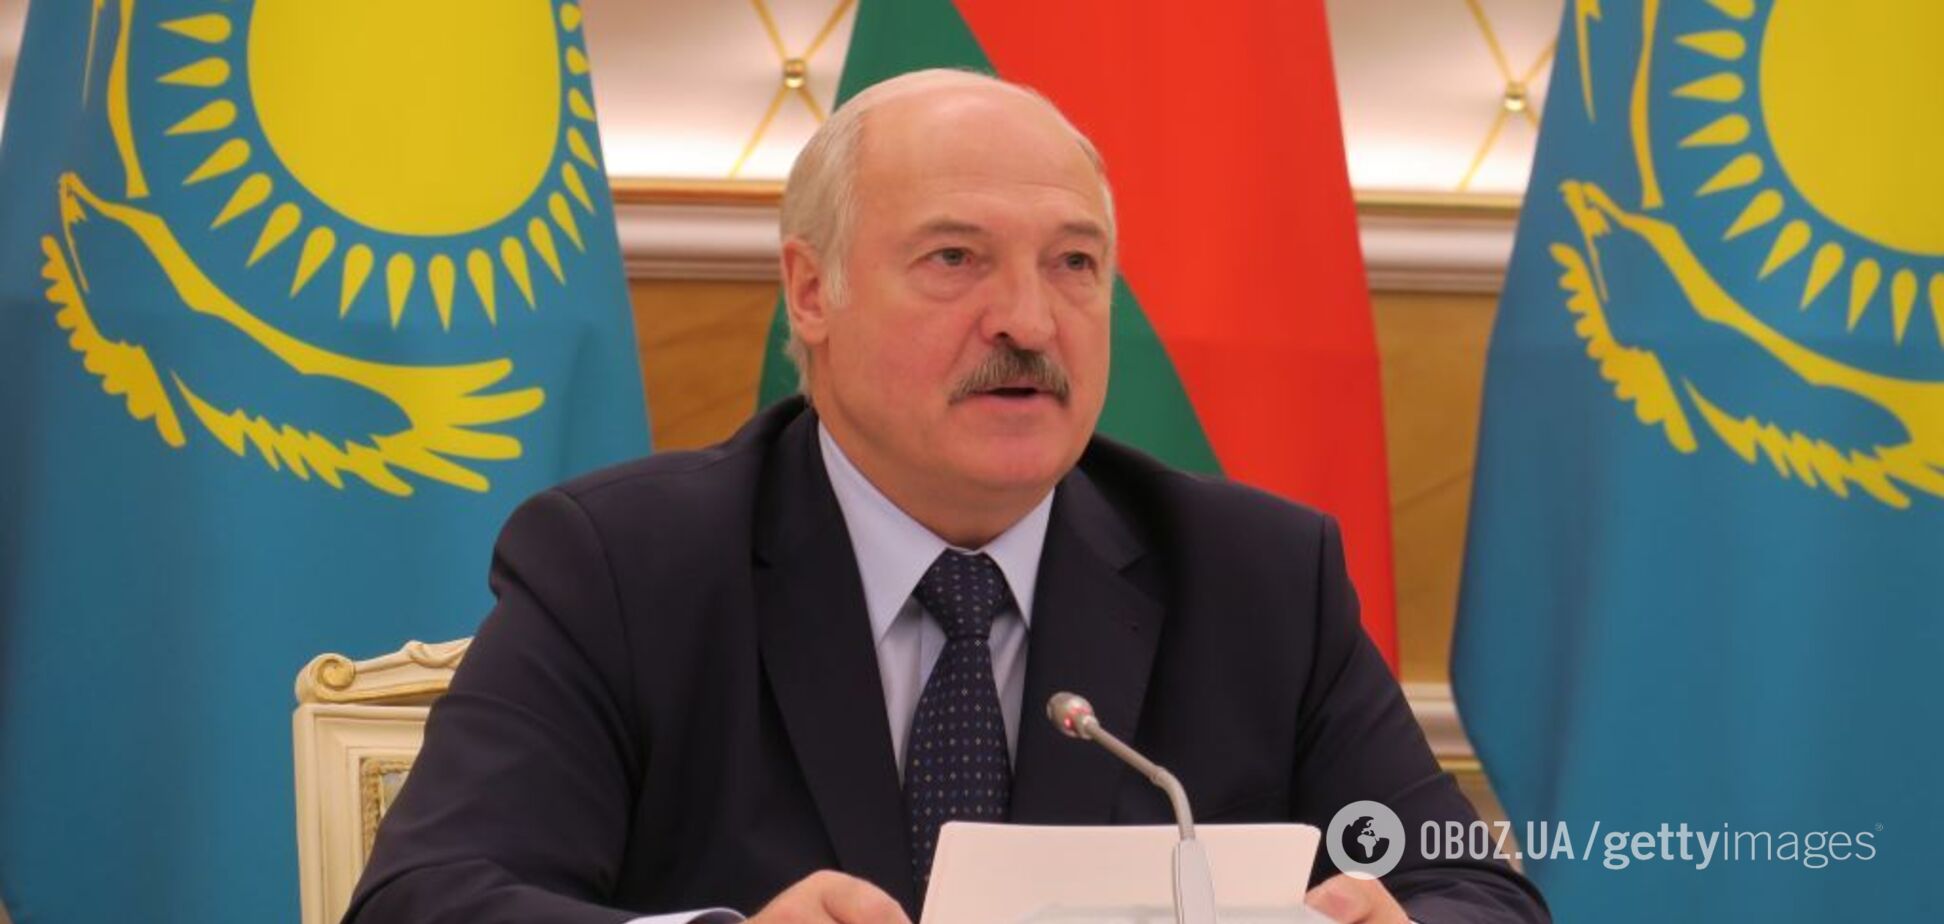 Об'єднання Росії та Білорусі: Лукашенку запропонували піти українським шляхом